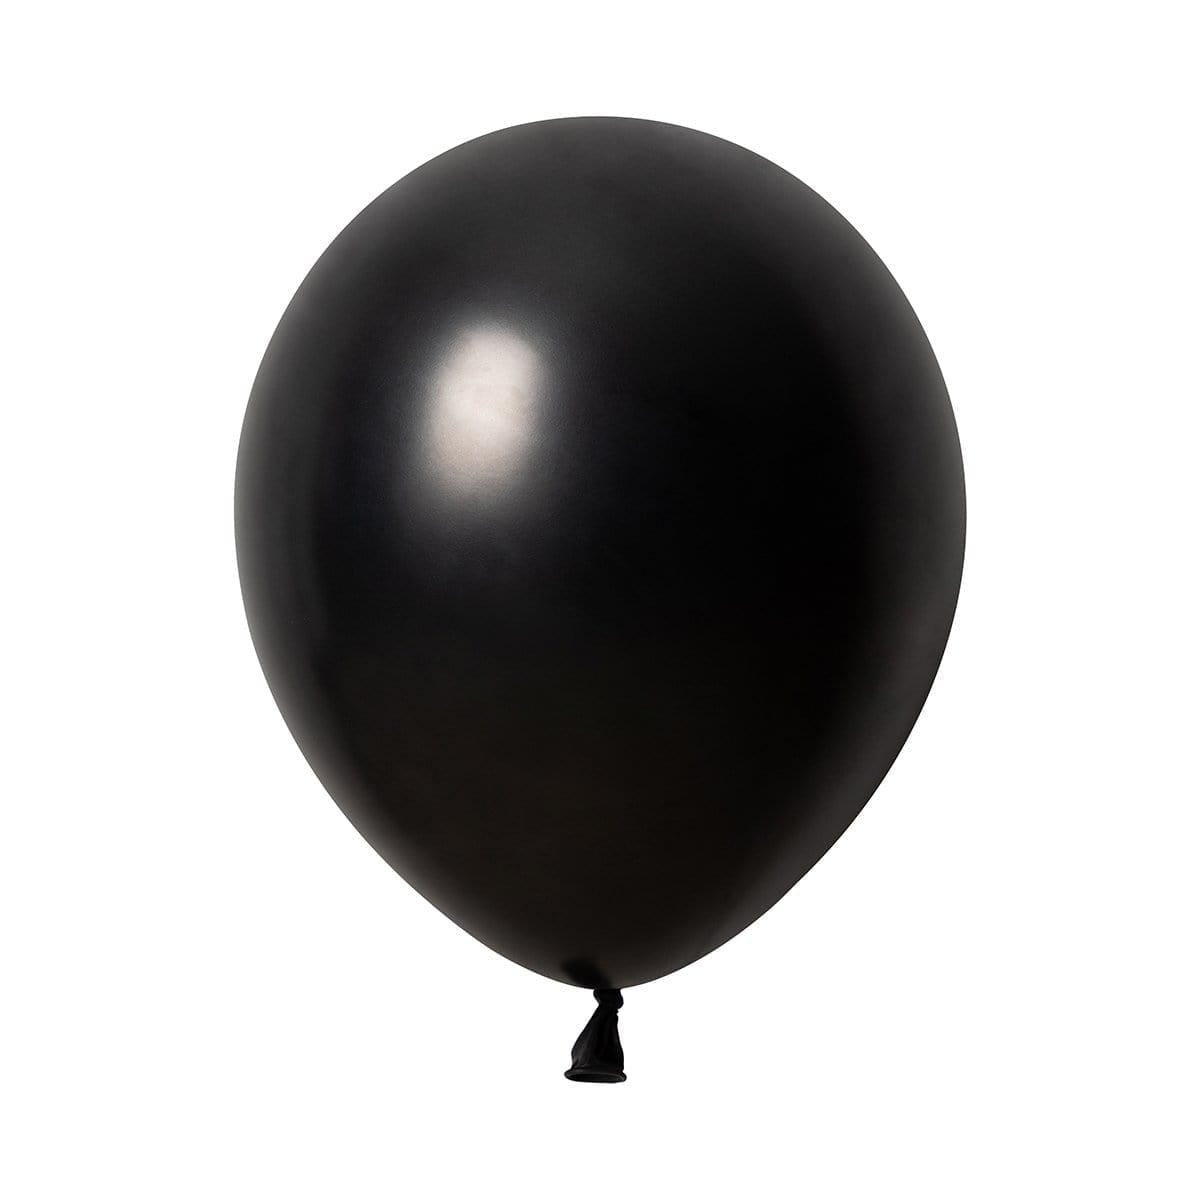 Grossiste Ballon noir latex 40 cm + 2 sachets de confettis roses et bleus, Réservé aux professionnels